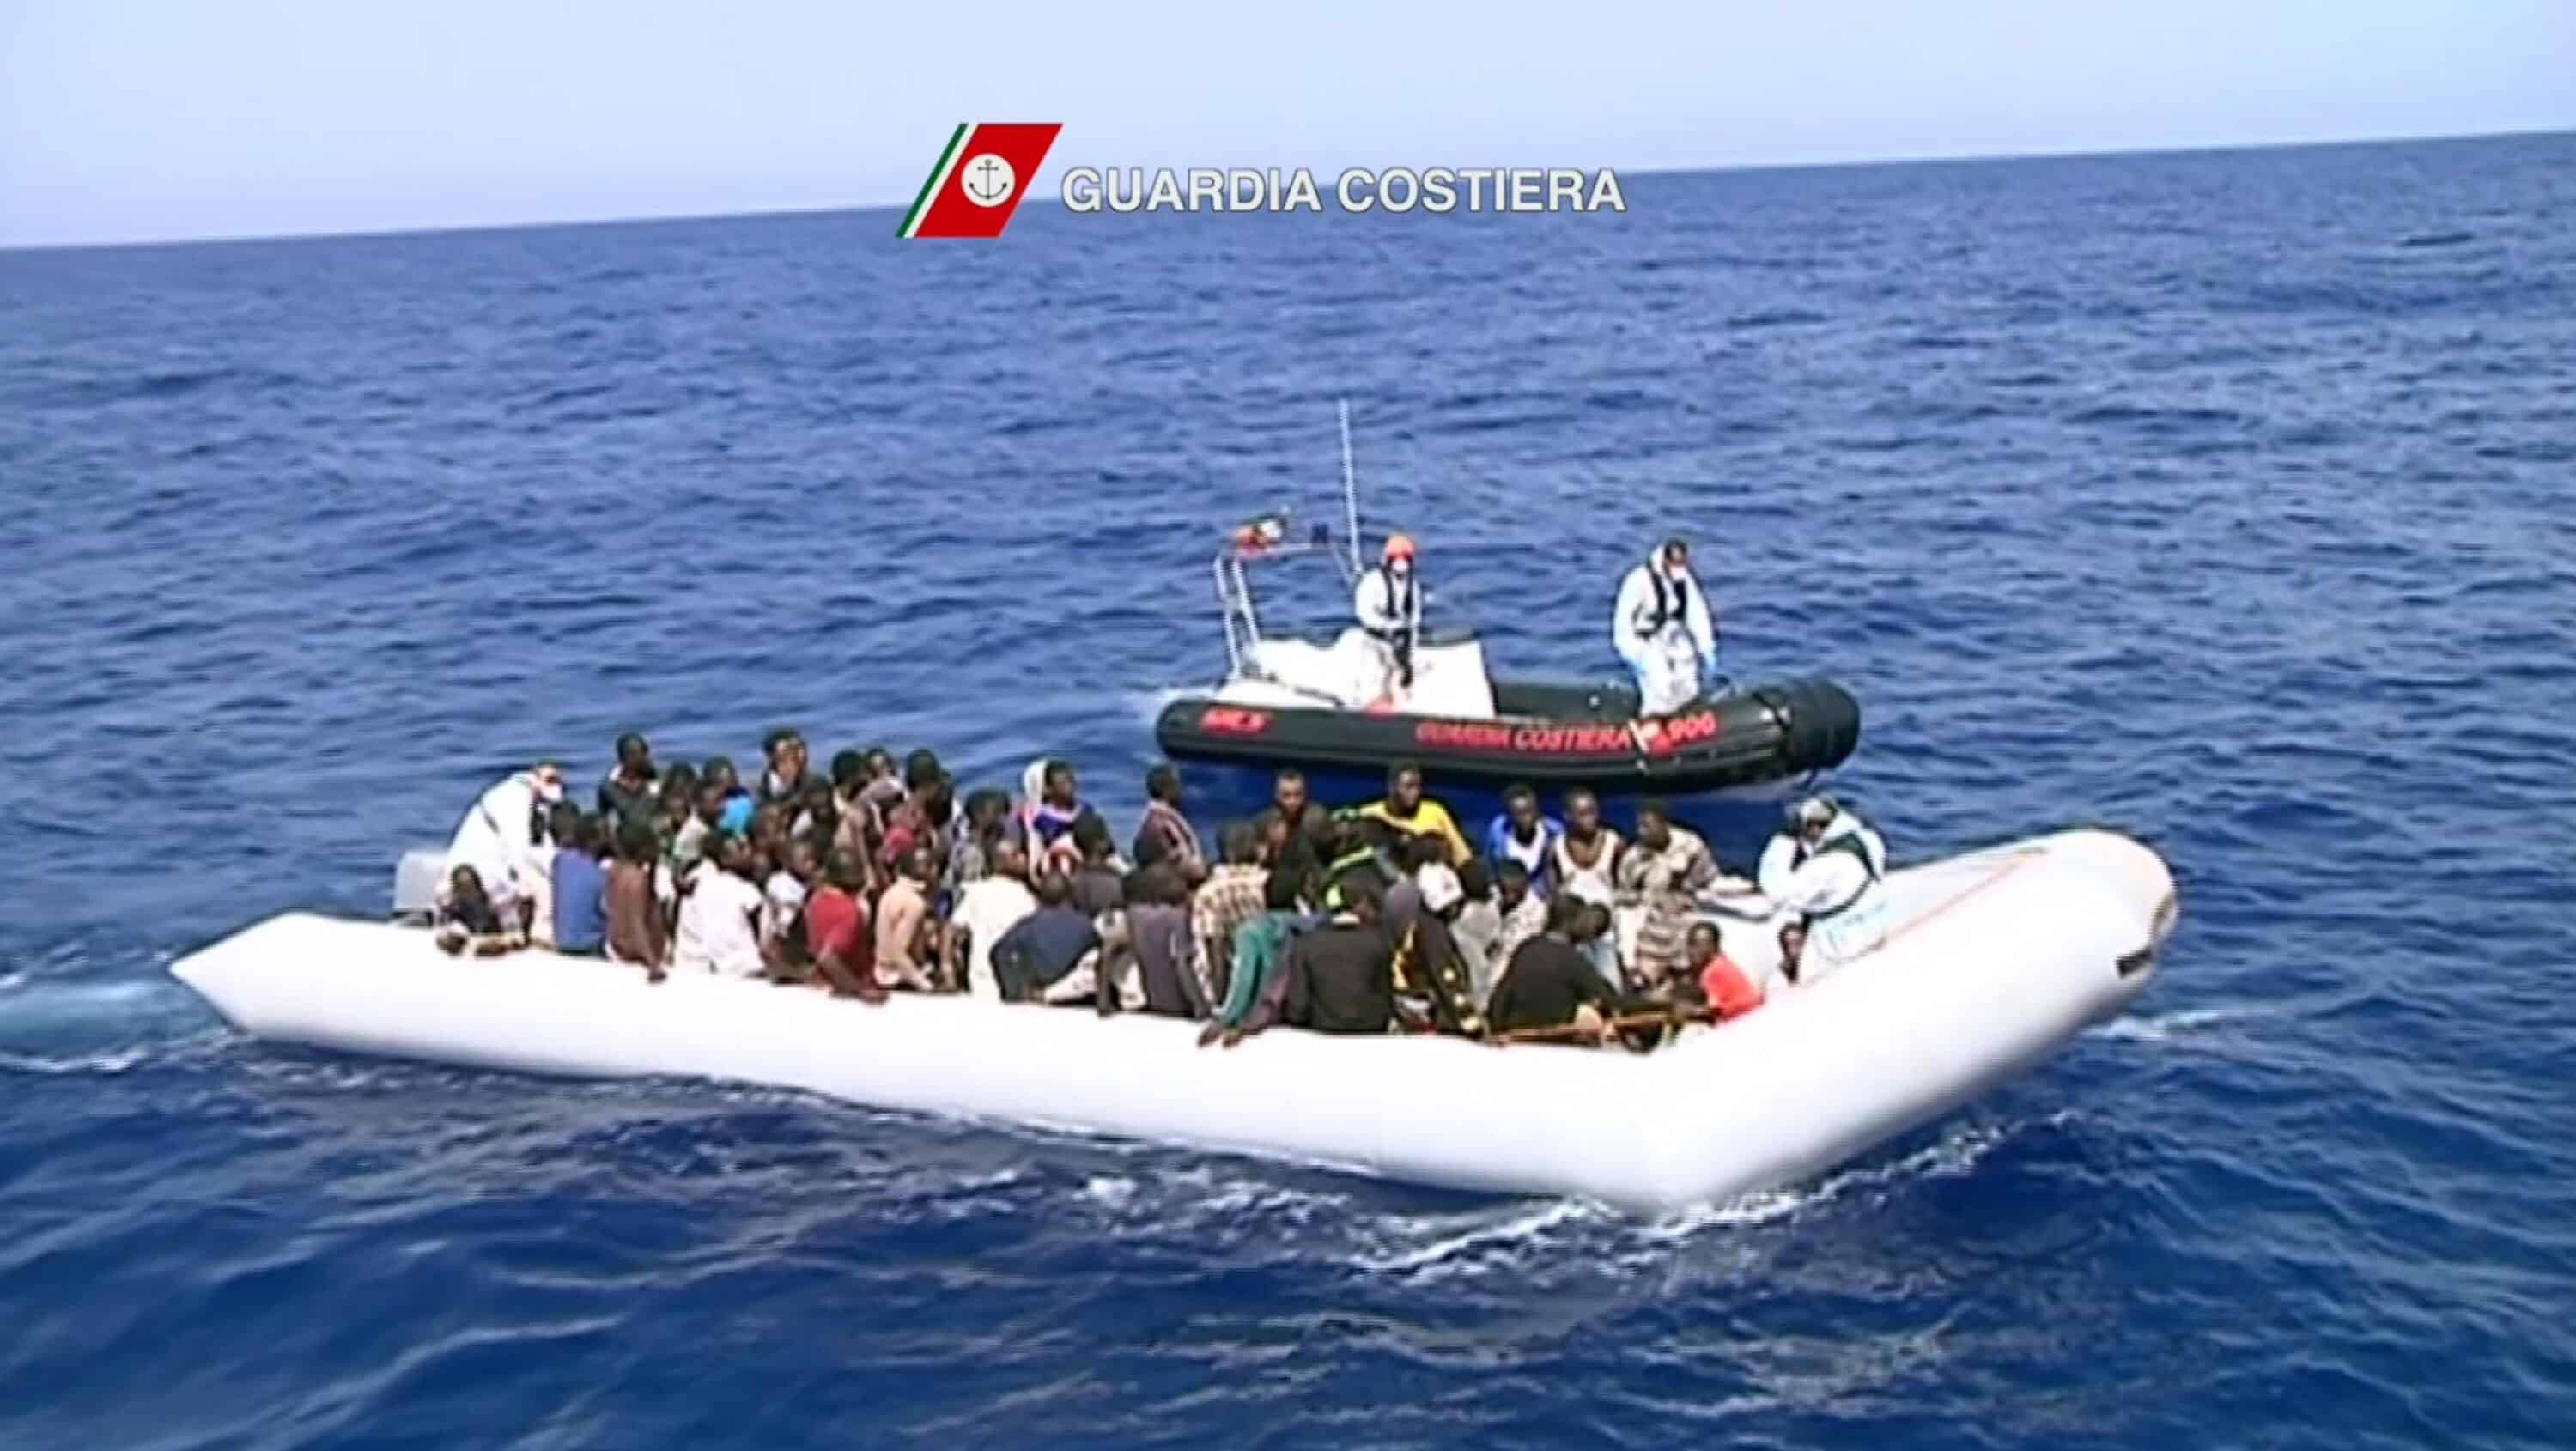 Migranti, a Lampedusa 26 sbarchi in un giorno. Ci sono 18 dispersi